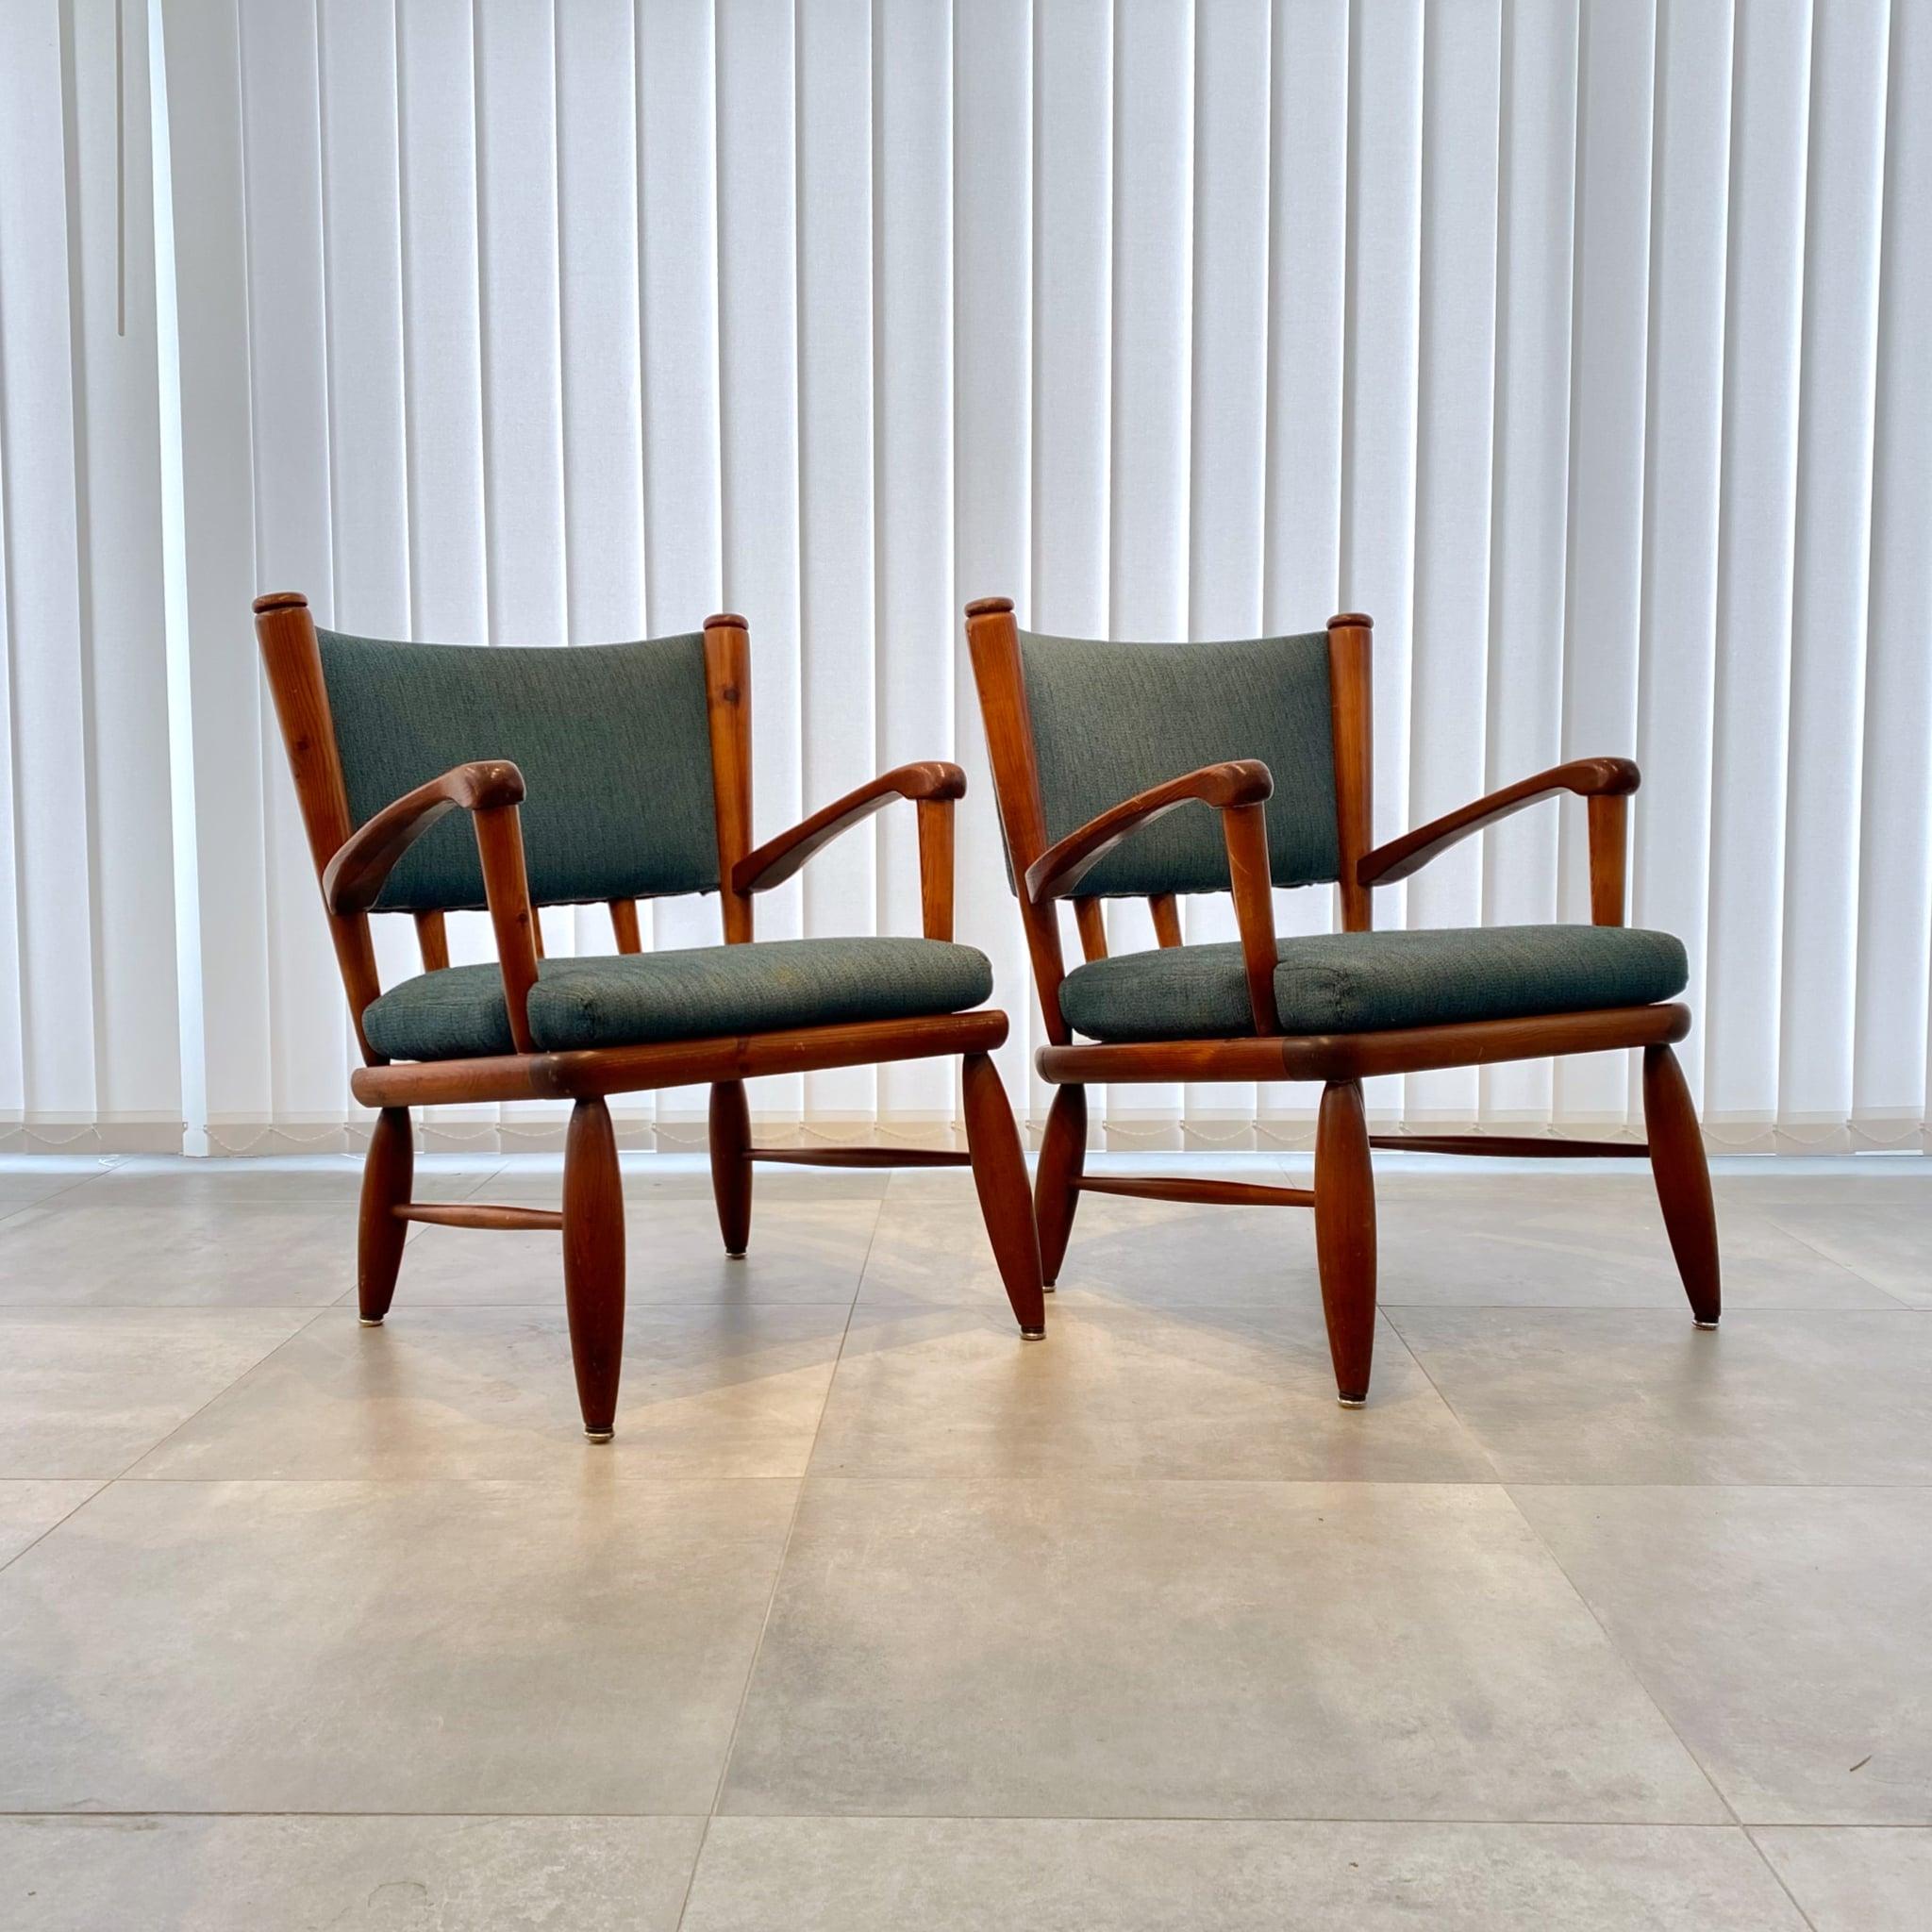 Paire de fauteuils Säter conçus par Gunnar Göpert en 1948 pour le fabricant suédois Göperts Industri, Jönköping. Fabriqué en pin massif avec le tissu bleu d'origine. Le modèle a été présenté comme une nouveauté dans une annonce pleine page du